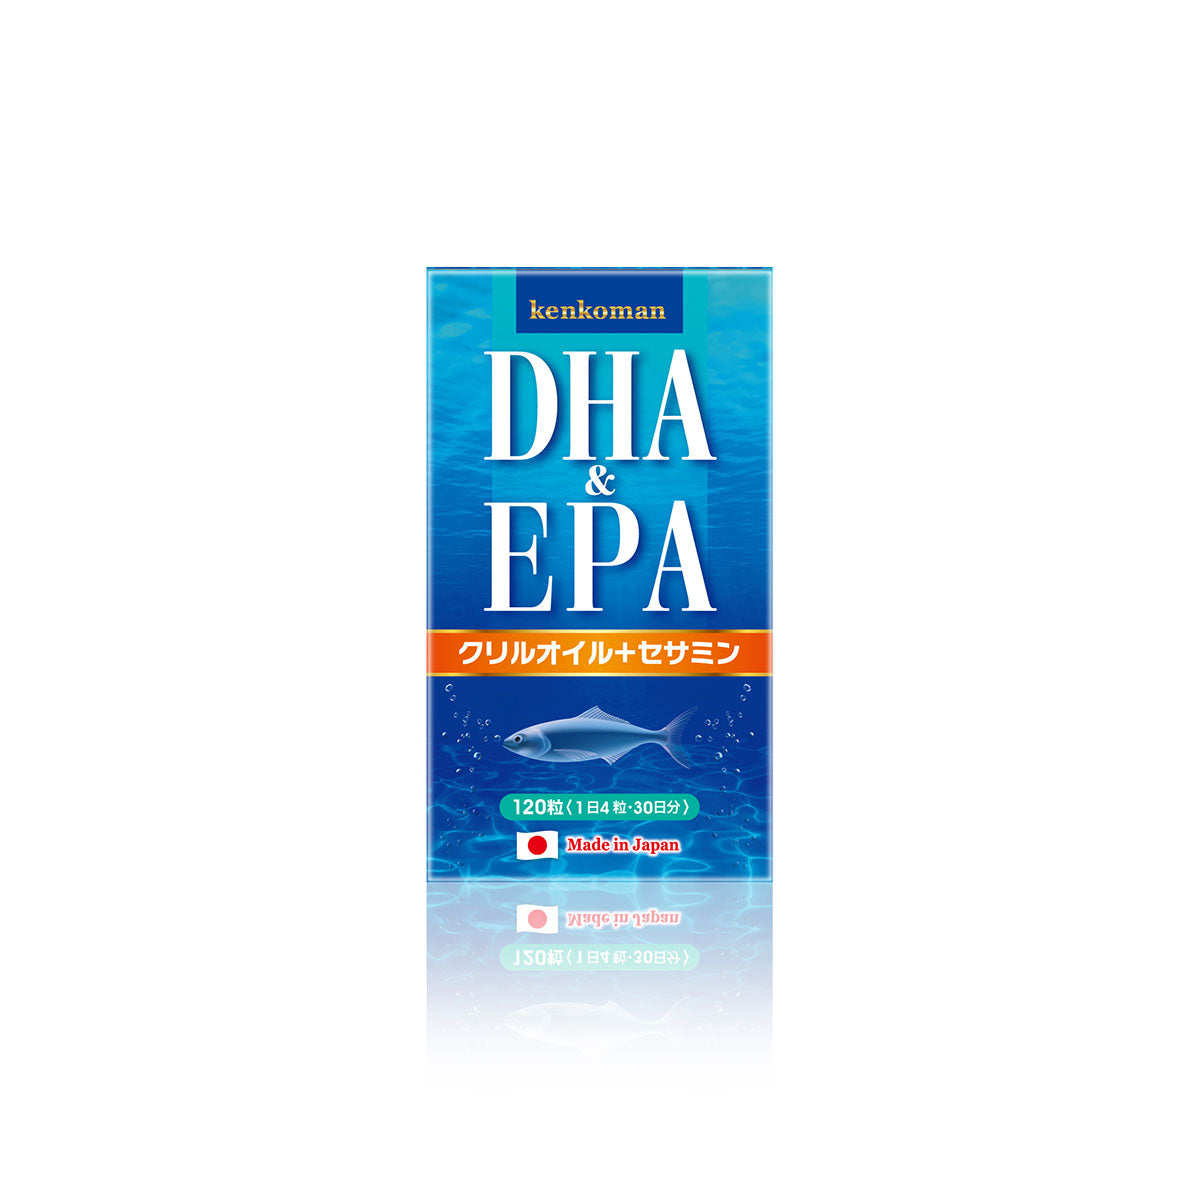 DHA & EPA